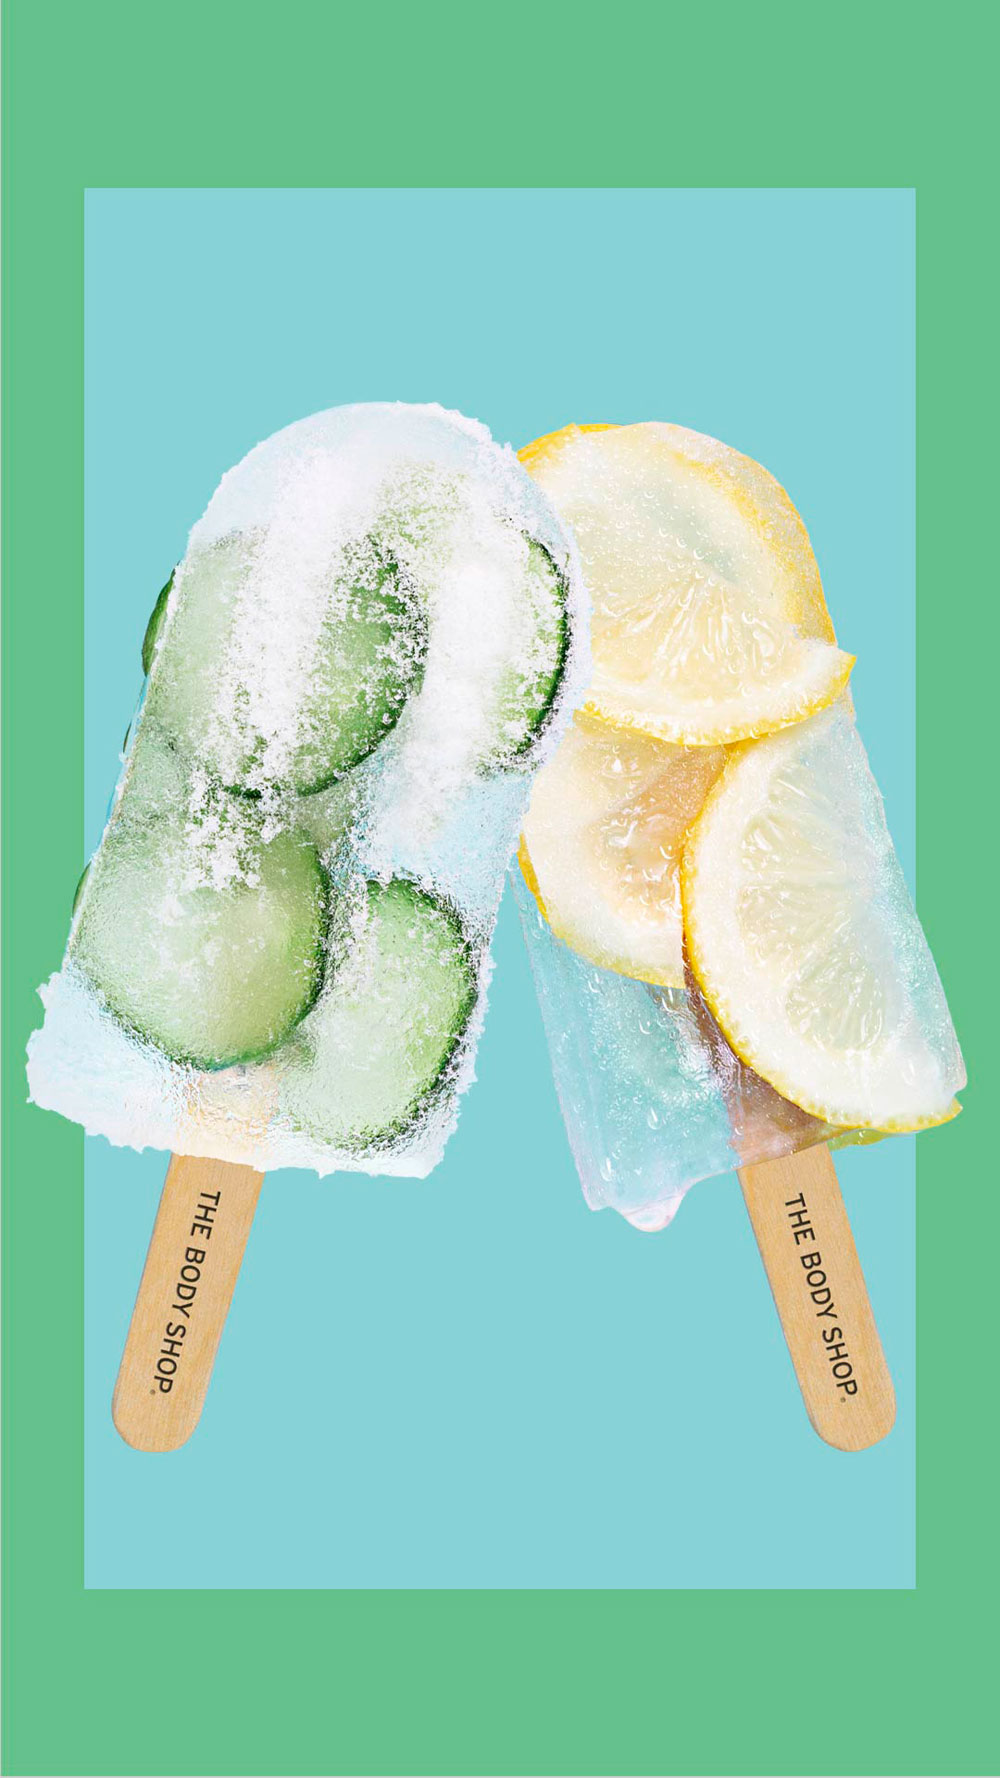 Stay cool and win: sonrisa verlost die neuen, limitierten Sommerkollektionen Cool Cucumber und Zesty Lemon von The Body Shop.